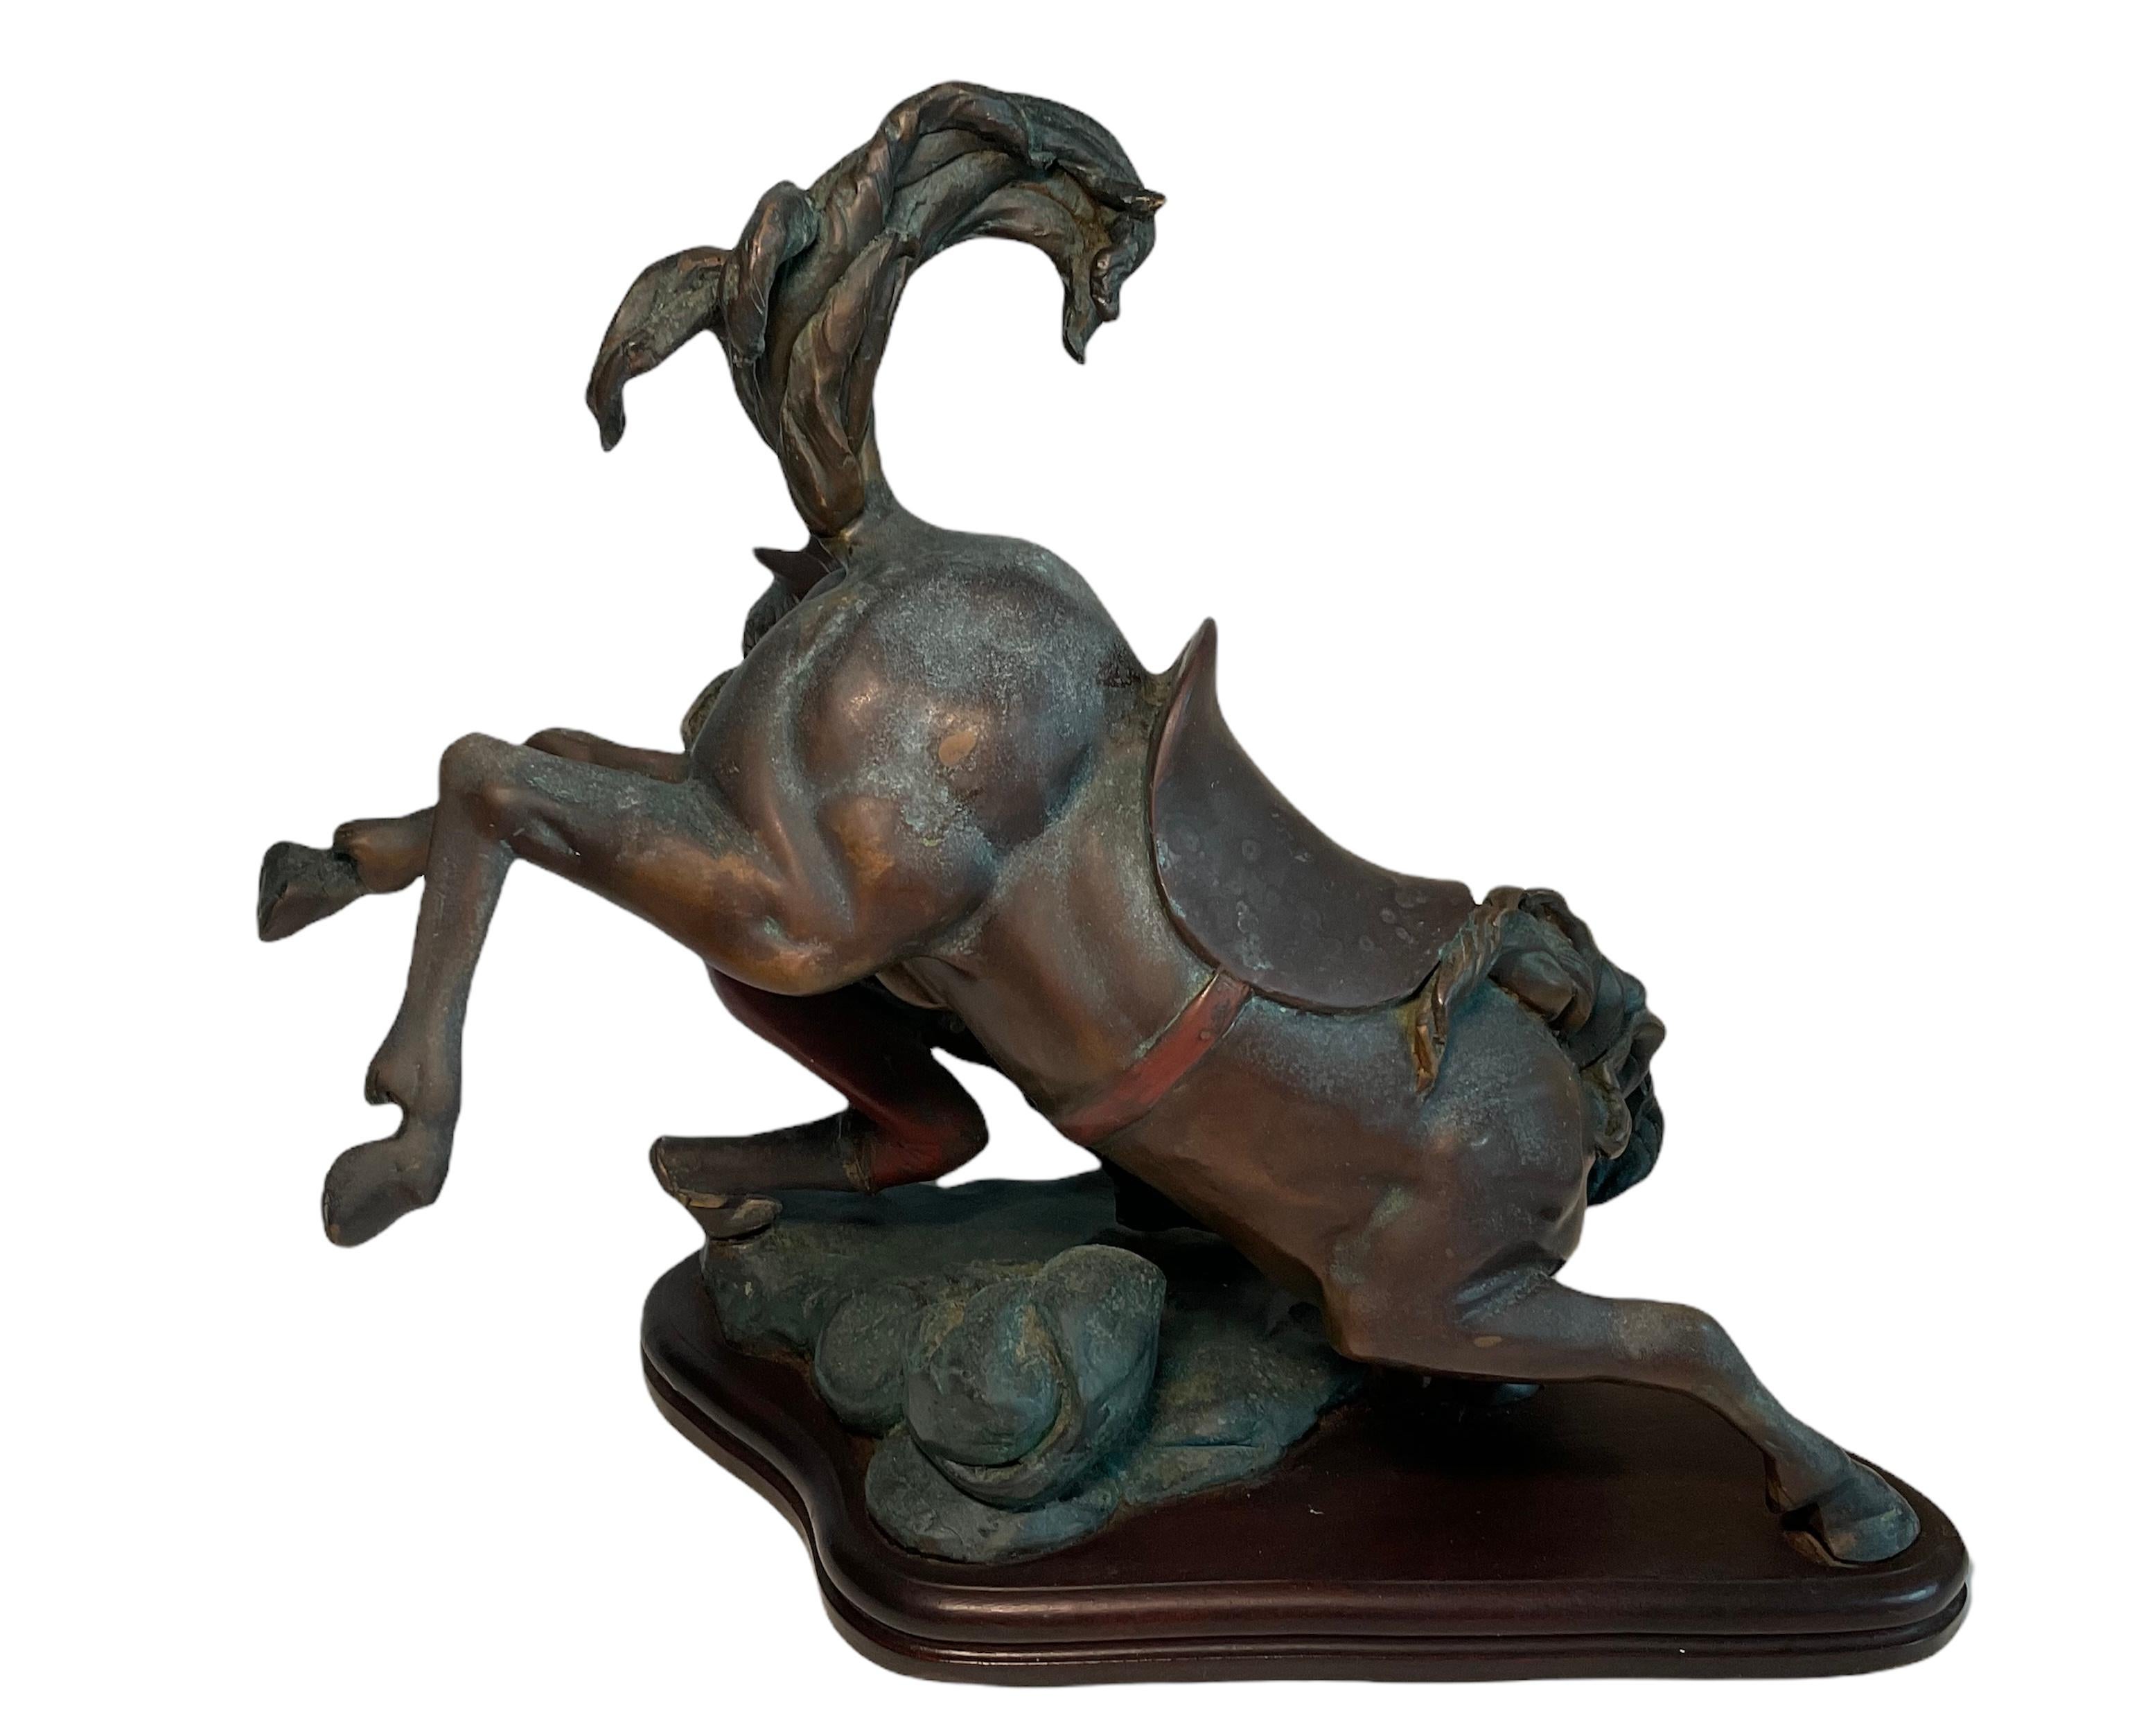 Dies ist eine seltene und sehr gut gemachte Bronzeskulptur, die einen Cowboy darstellt, der in der Erde steht und schließlich ein bockendes Pferd bei einem Rodeo bezwungen hat. Die Kleidung des bronzenen Cowboys und der Sattelknüppel sind bemalt.